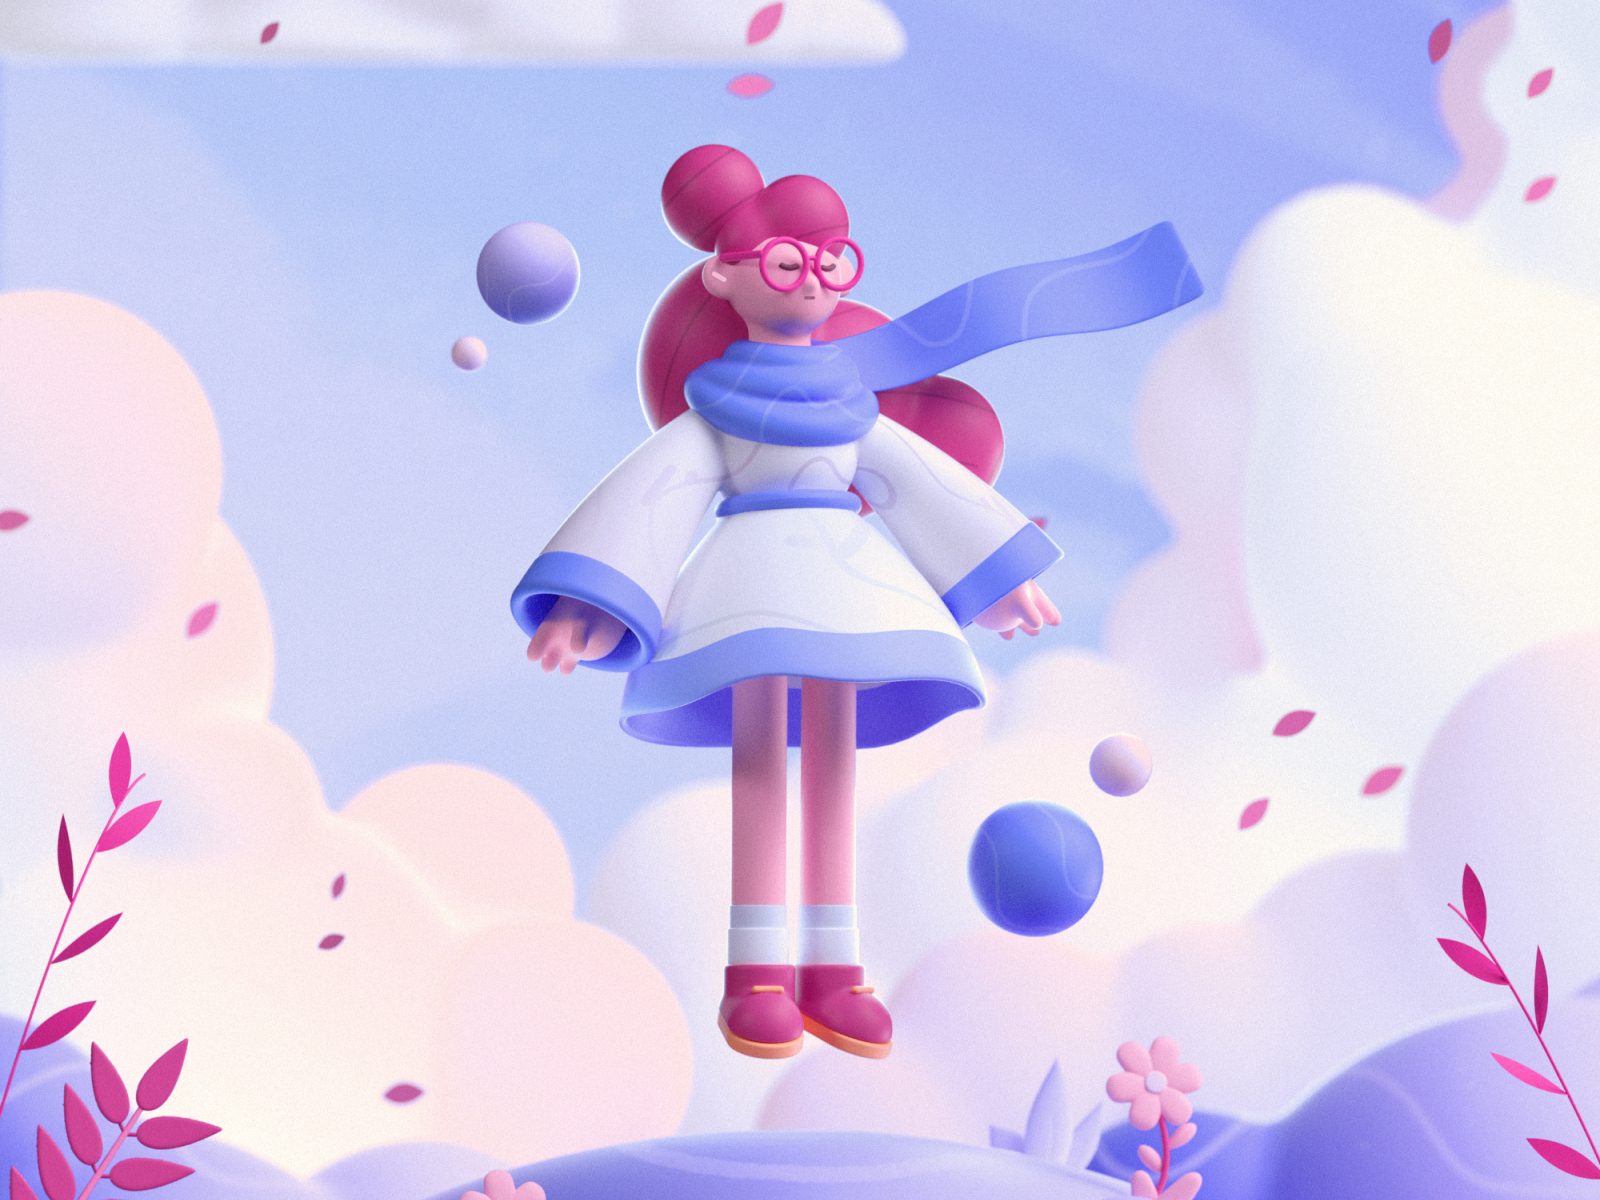 Cloud Girl by Mattey on Dribbble